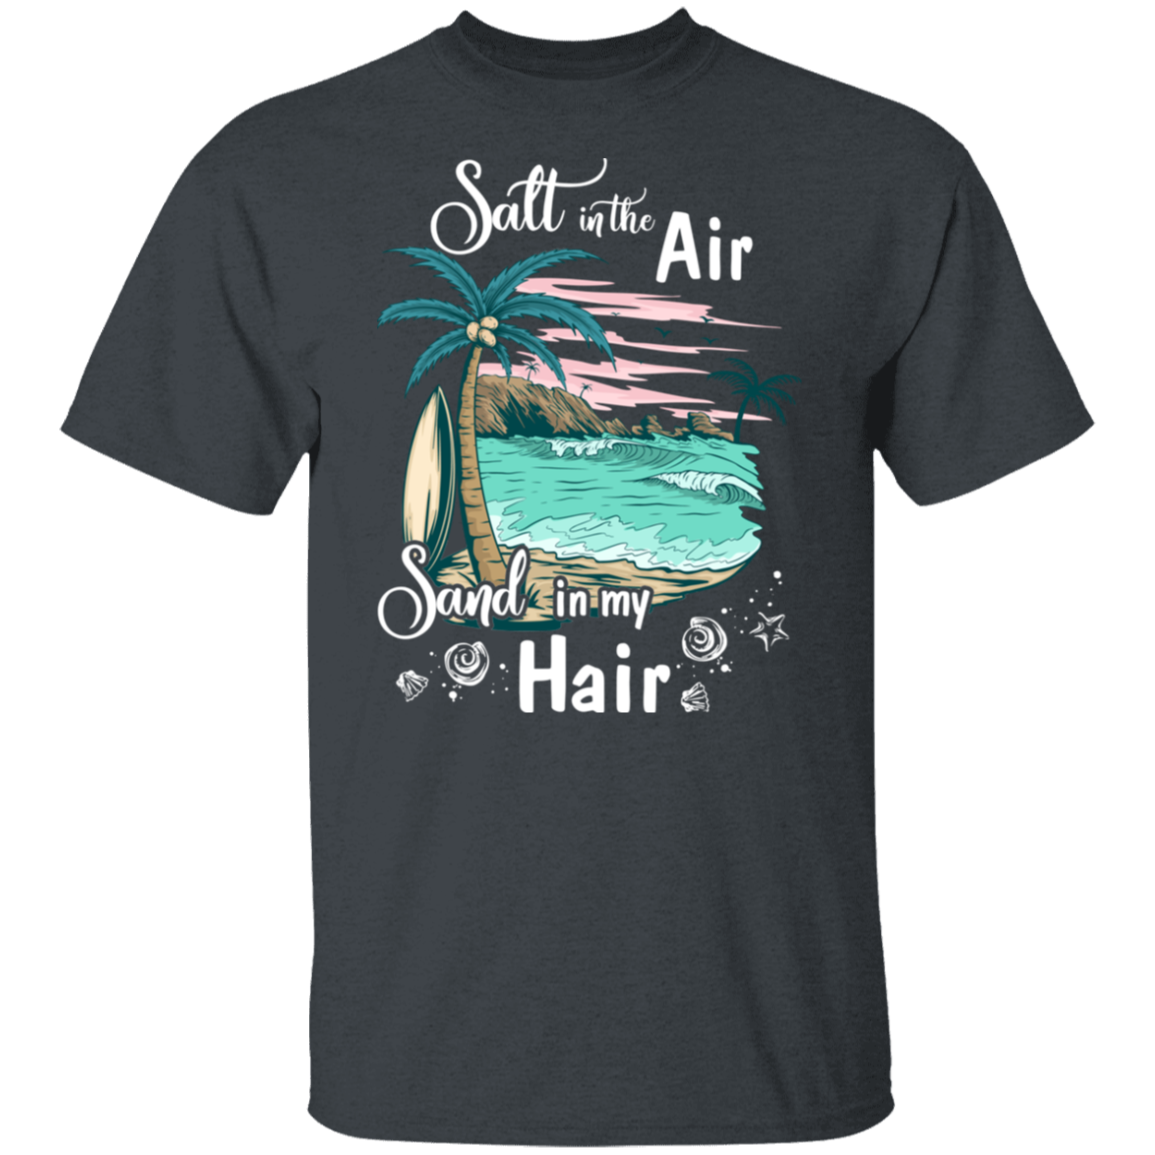 Salt In the Air Sand In My Hair 02 (1)